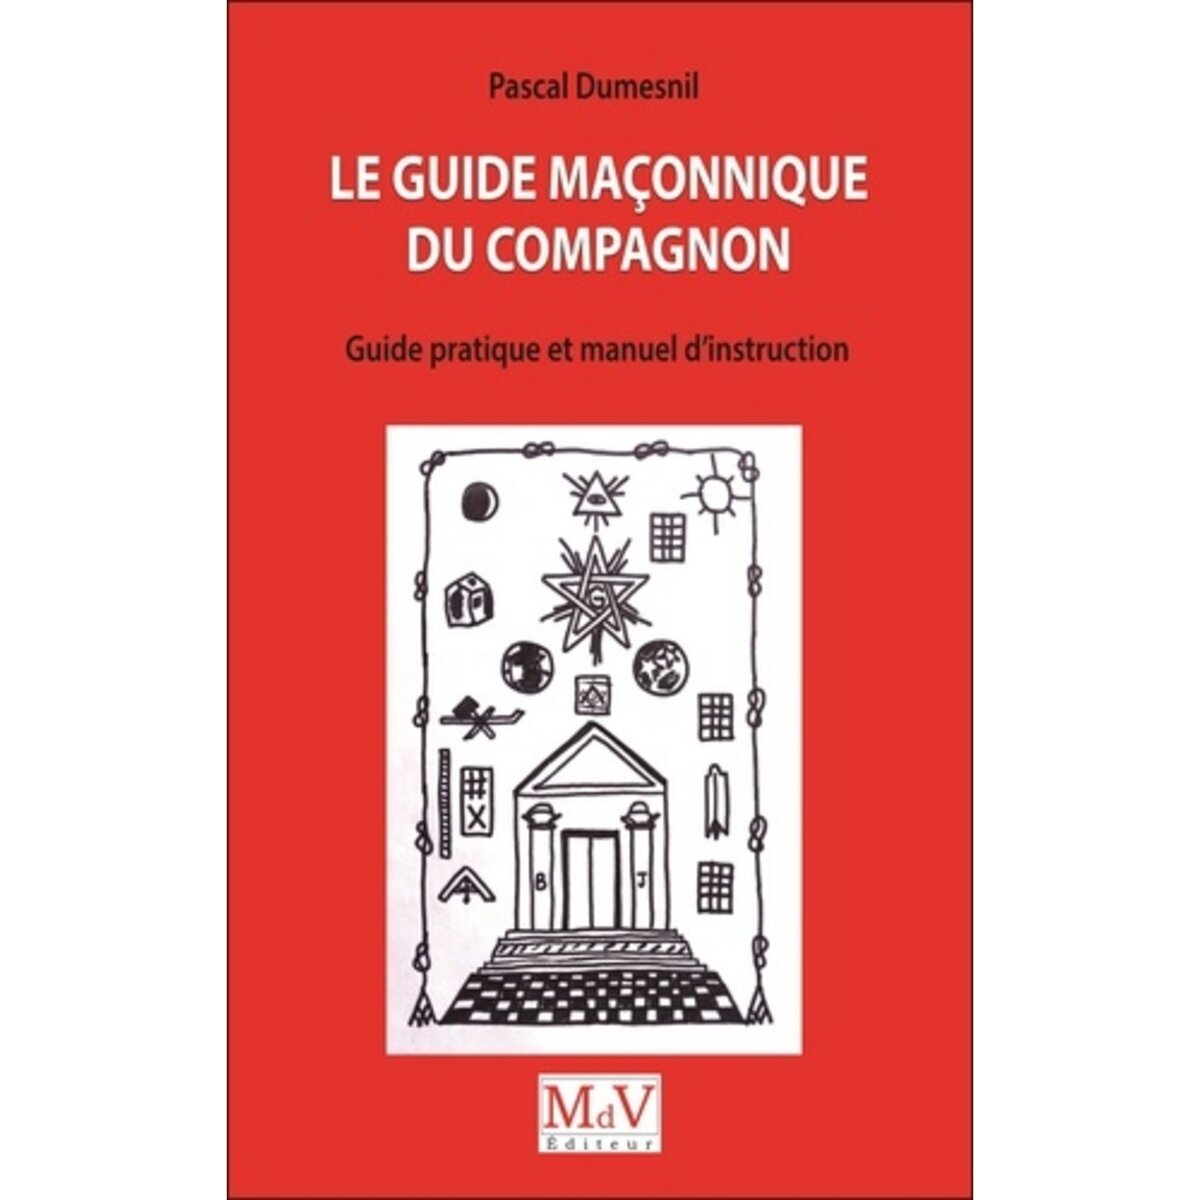  LE GUIDE MACONNIQUE DU COMPAGNON. GUIDE PRATIQUE ET MANUEL D'INSTRUCTION, Dumesnil Pascal